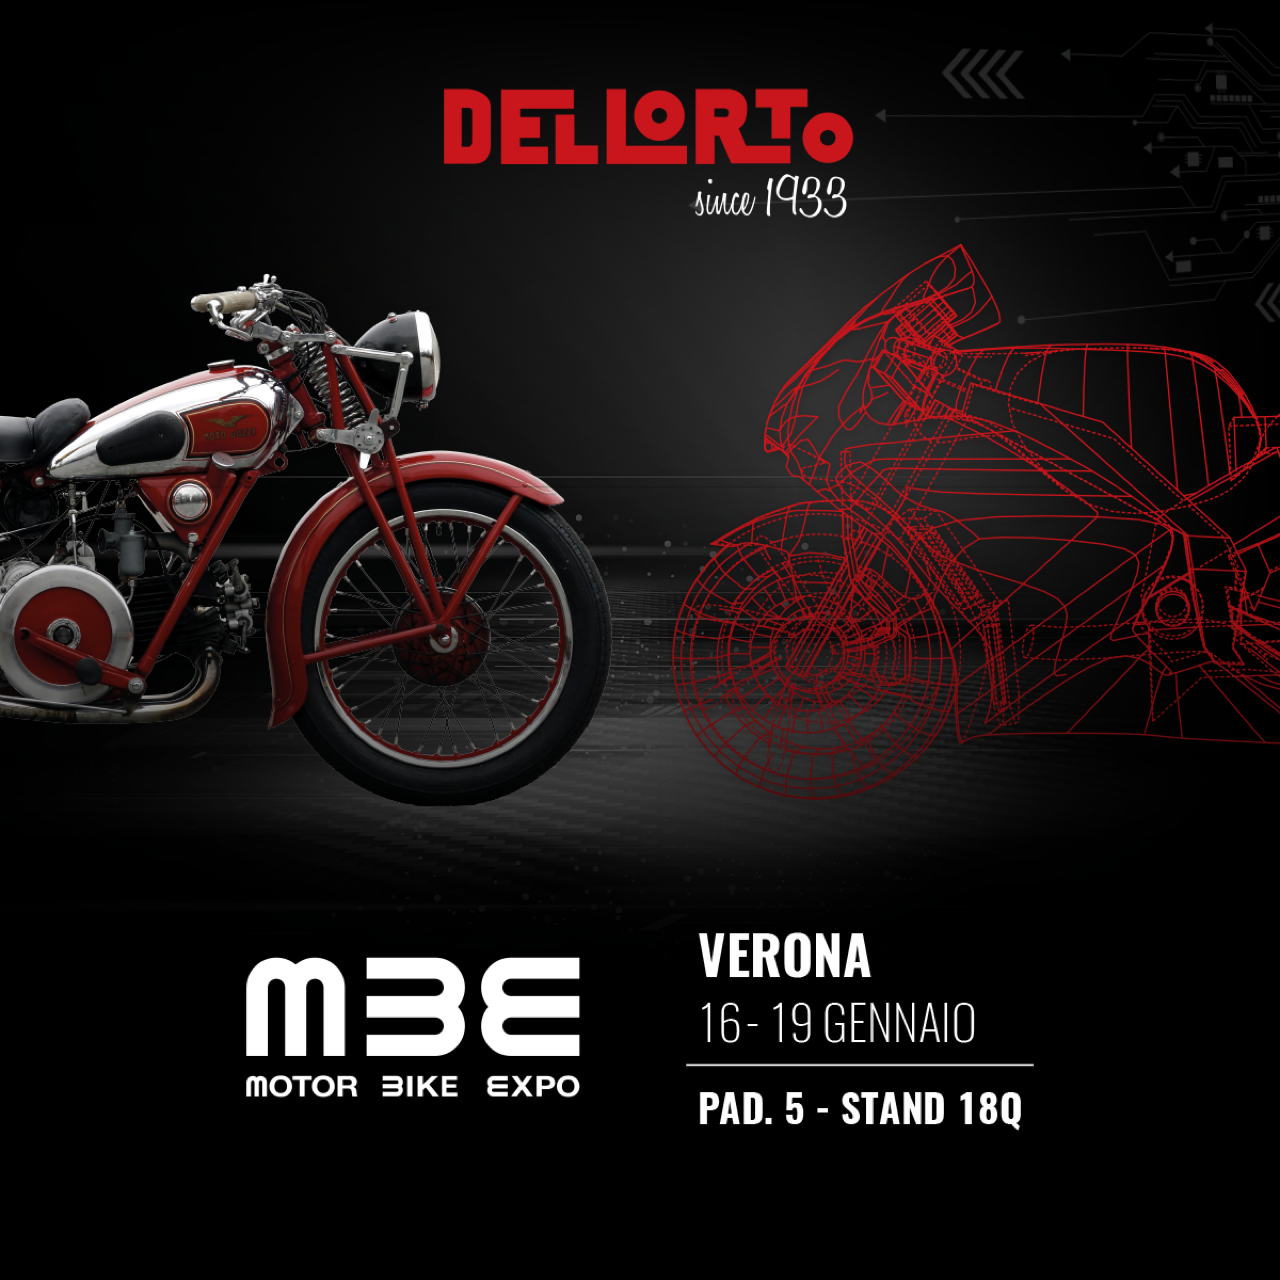 DELLORTO at the Motor Bike Expo 2020 - photo